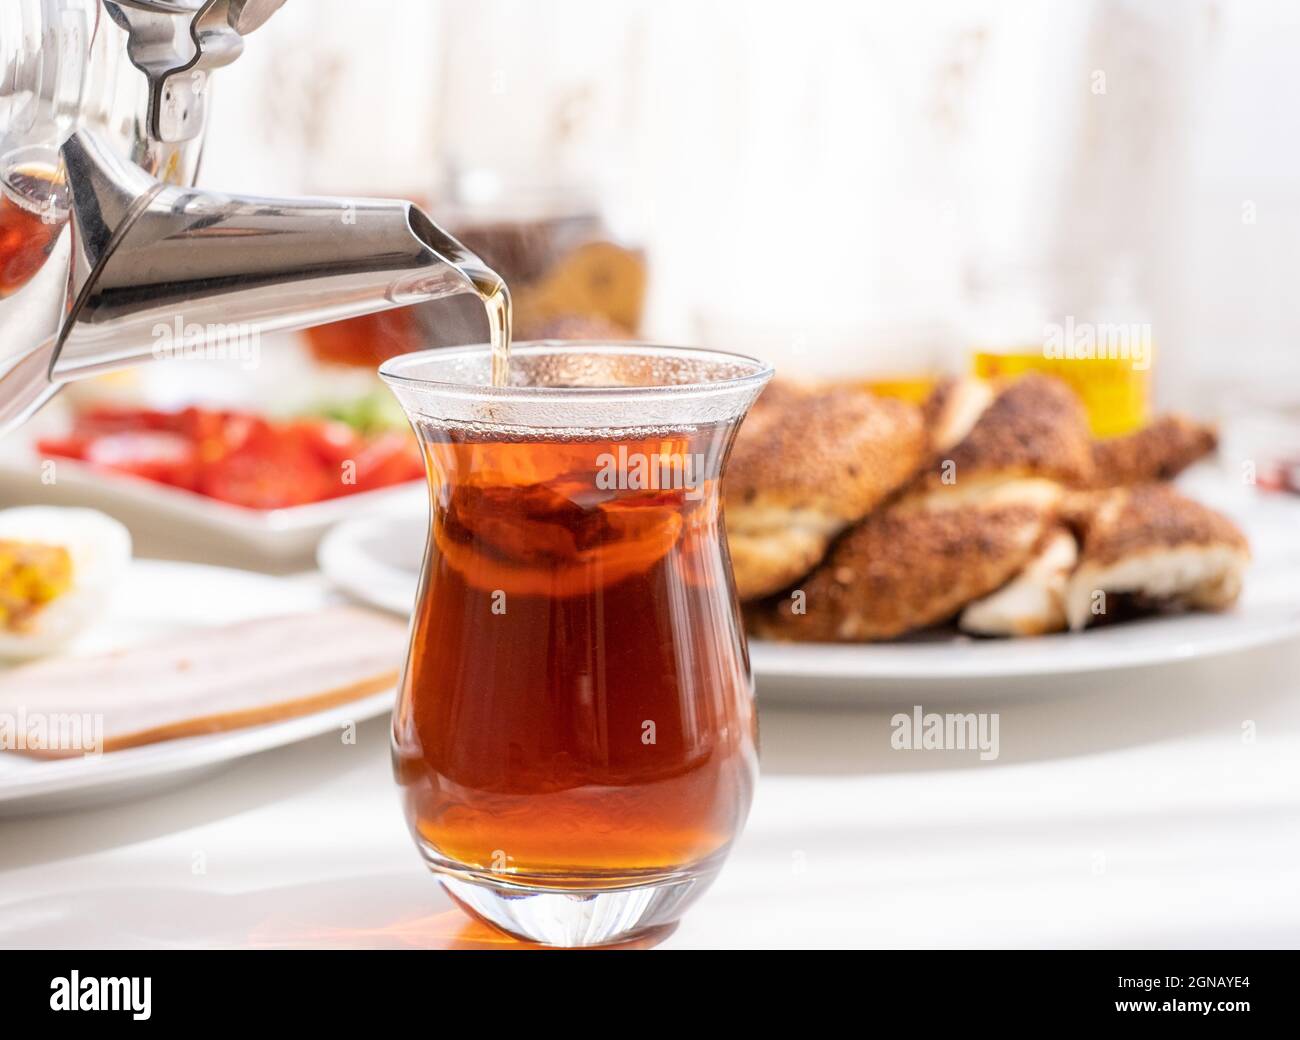 Tè turco fresco immagini e fotografie stock ad alta risoluzione - Alamy